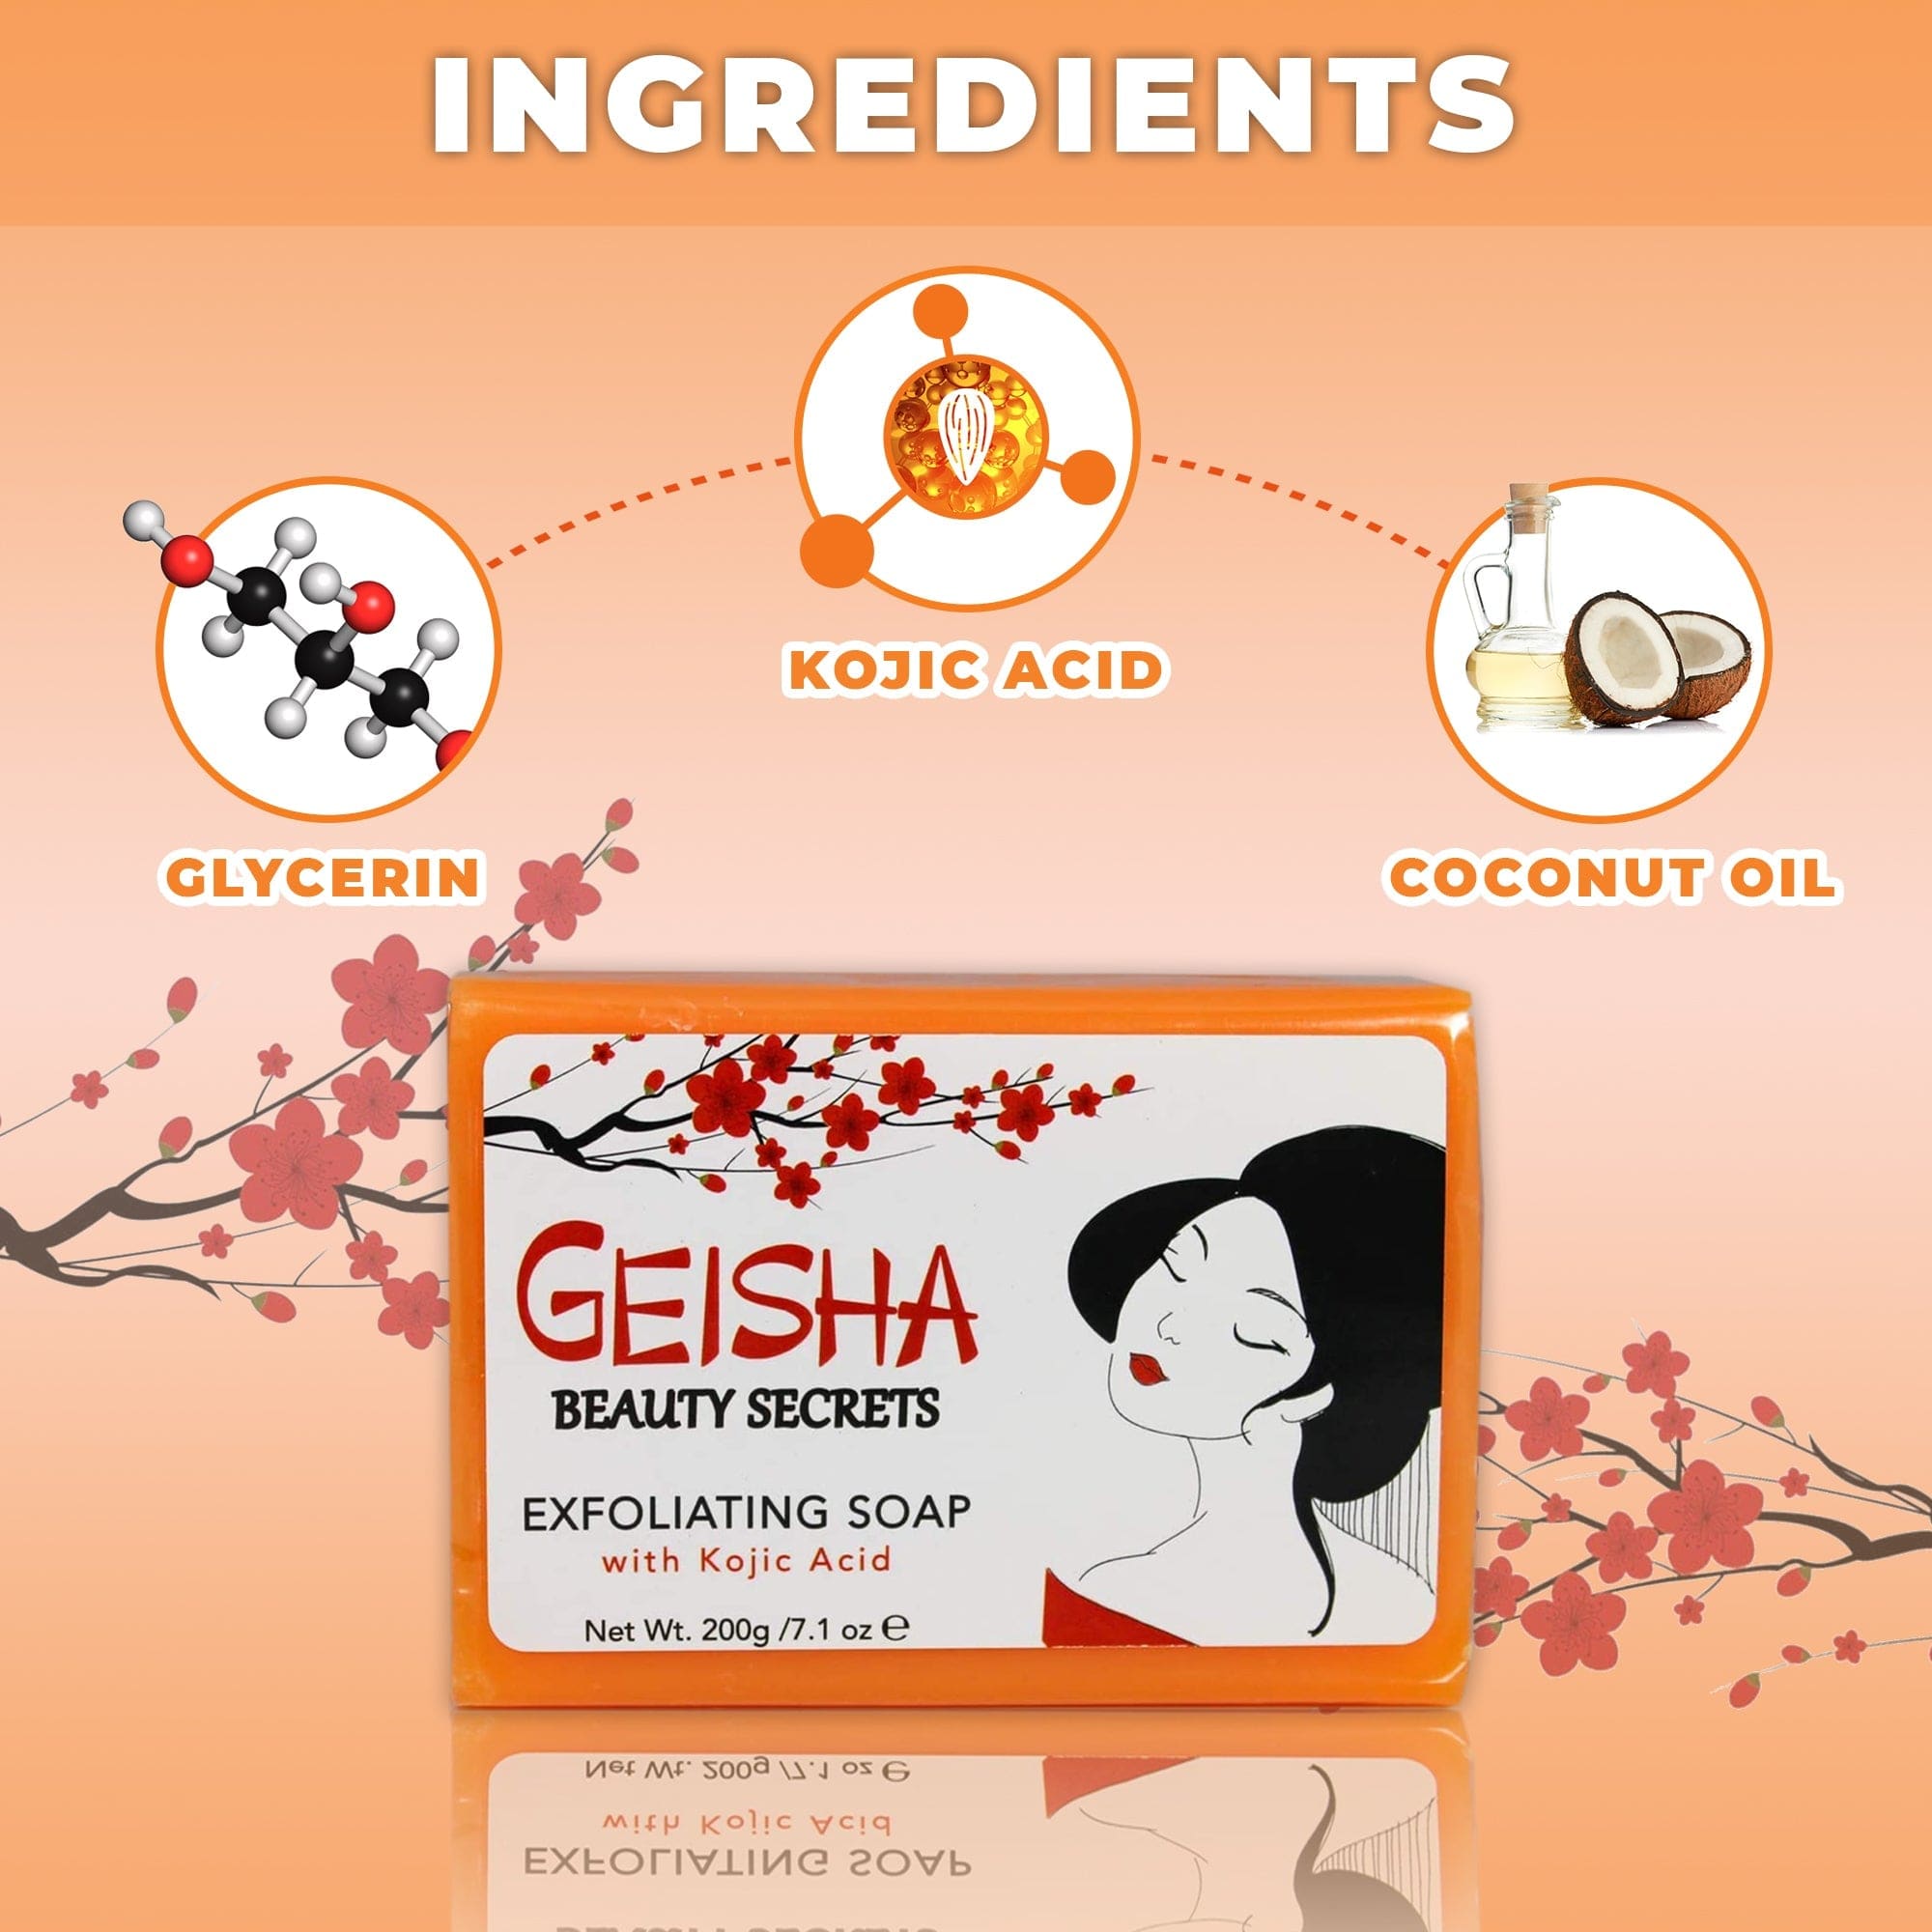 Geisha Beauty Secrets Sapone esfoliante con acido kojico - 200g / 7.1 oz Mitchell Brands - Mitchell Brands - Schiarimento della pelle, schiarimento della pelle, attenuazione delle macchie scure, burro di karité, prodotti per la crescita dei capelli